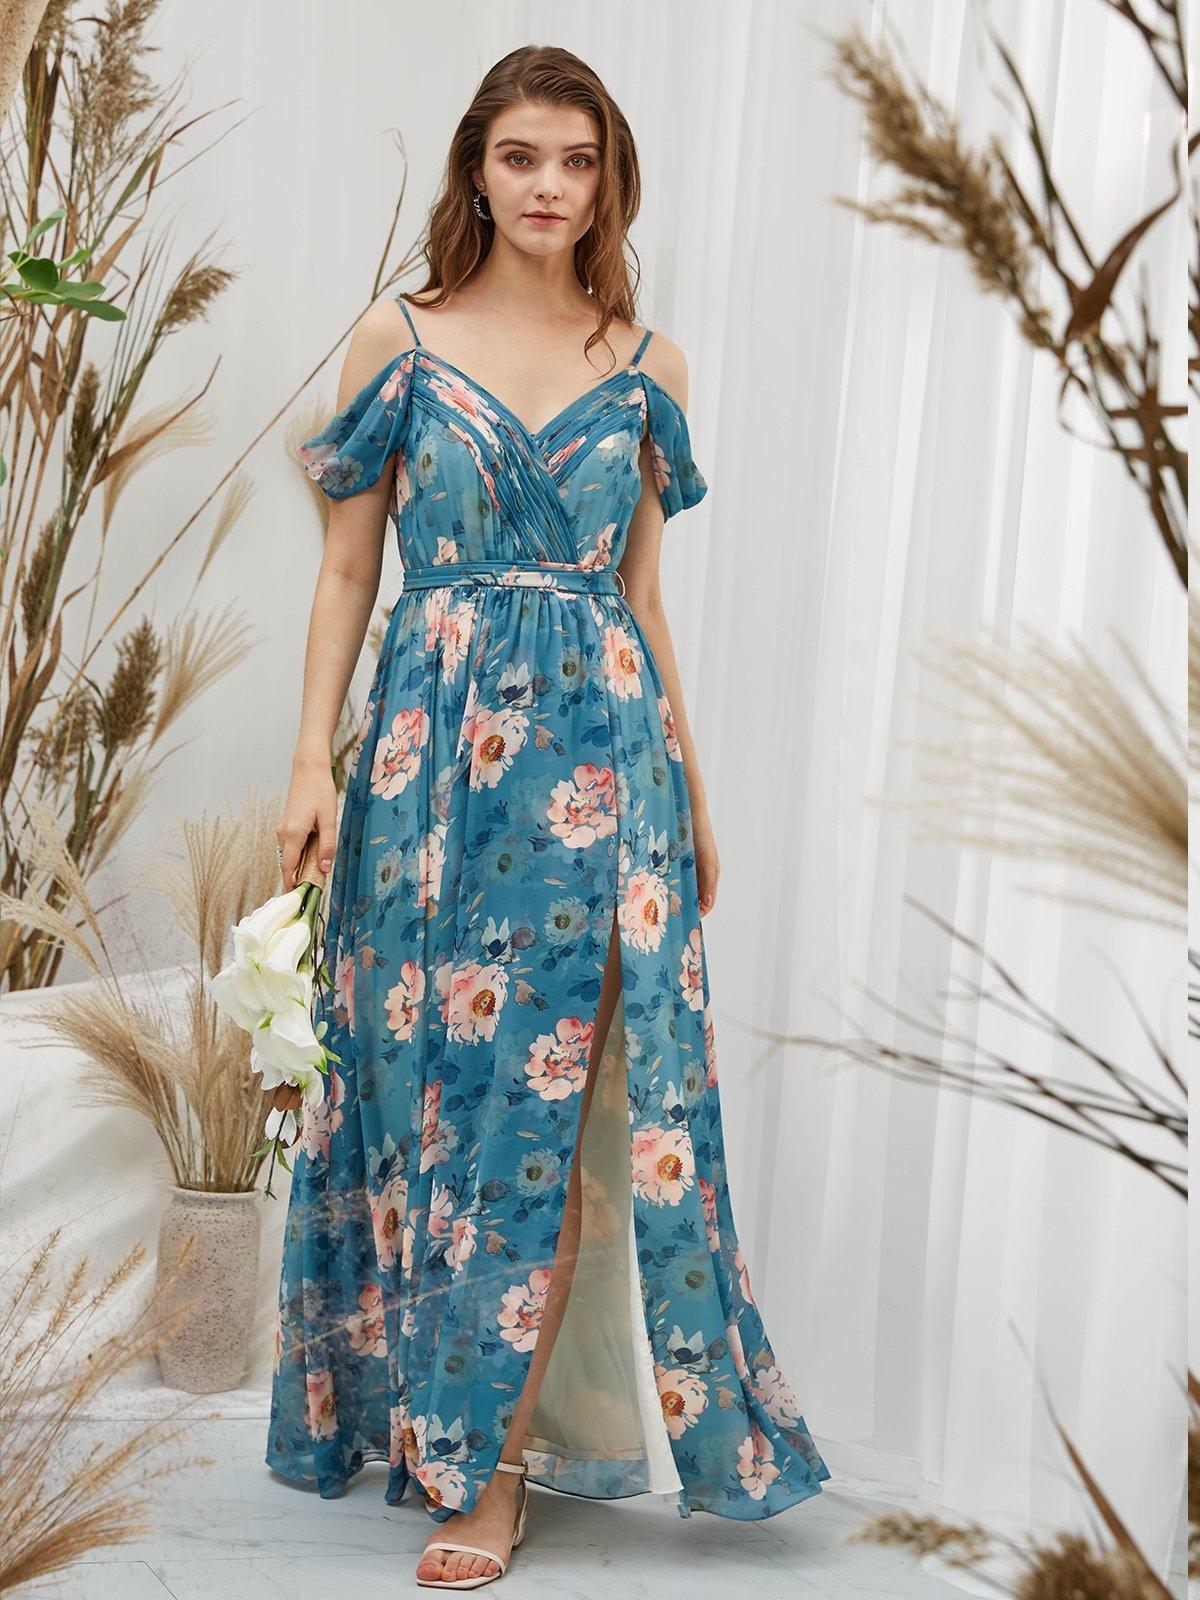 MissJophiel Straps V Neck Off the Shoulder Chiffon Print Floral Teal Floor Length Formal Evening Gown